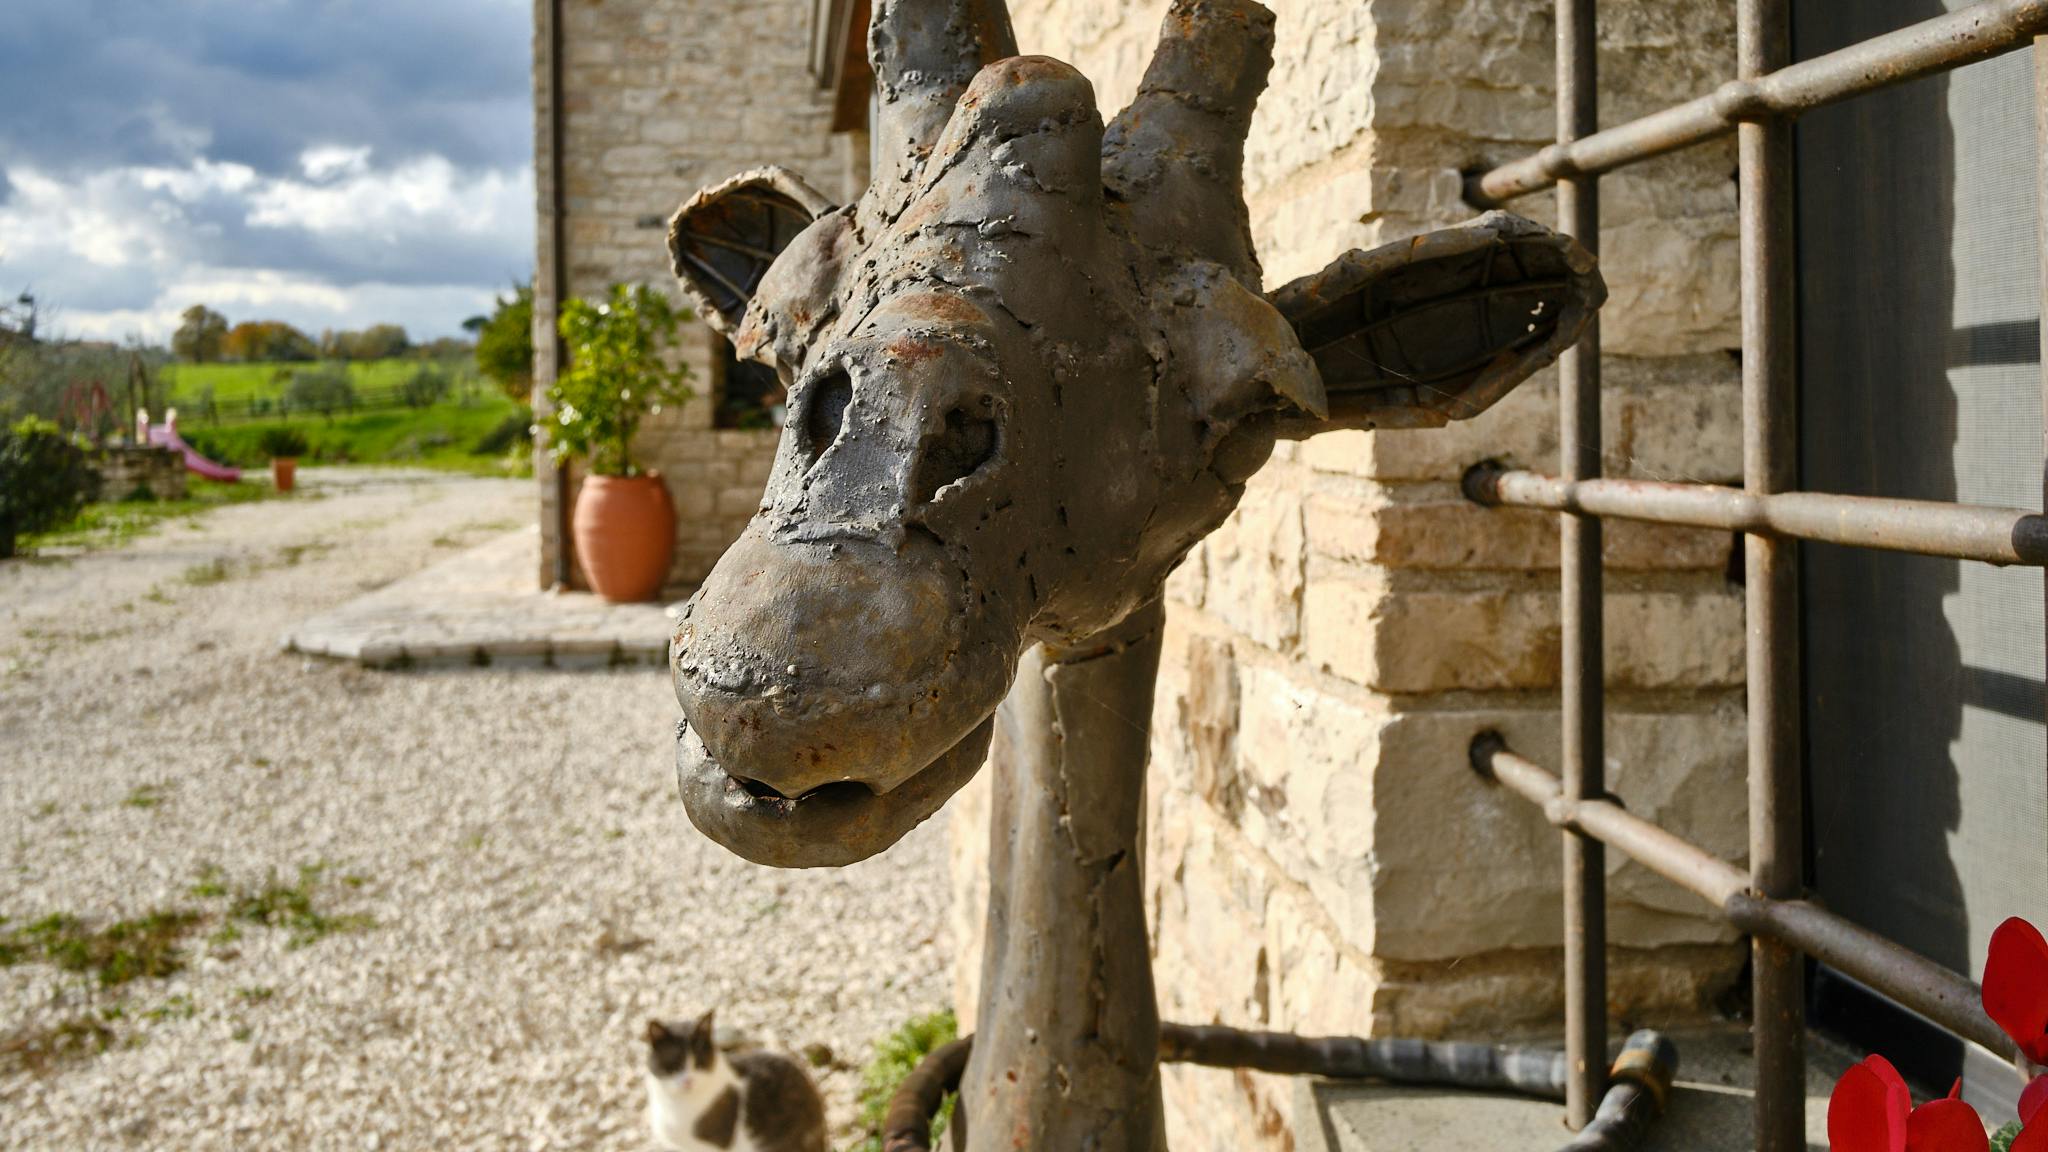 All’esterno della Dependance di campagna della Tenuta le Pietre si trova questa giraffa di ferro proveniente dal Kenia.